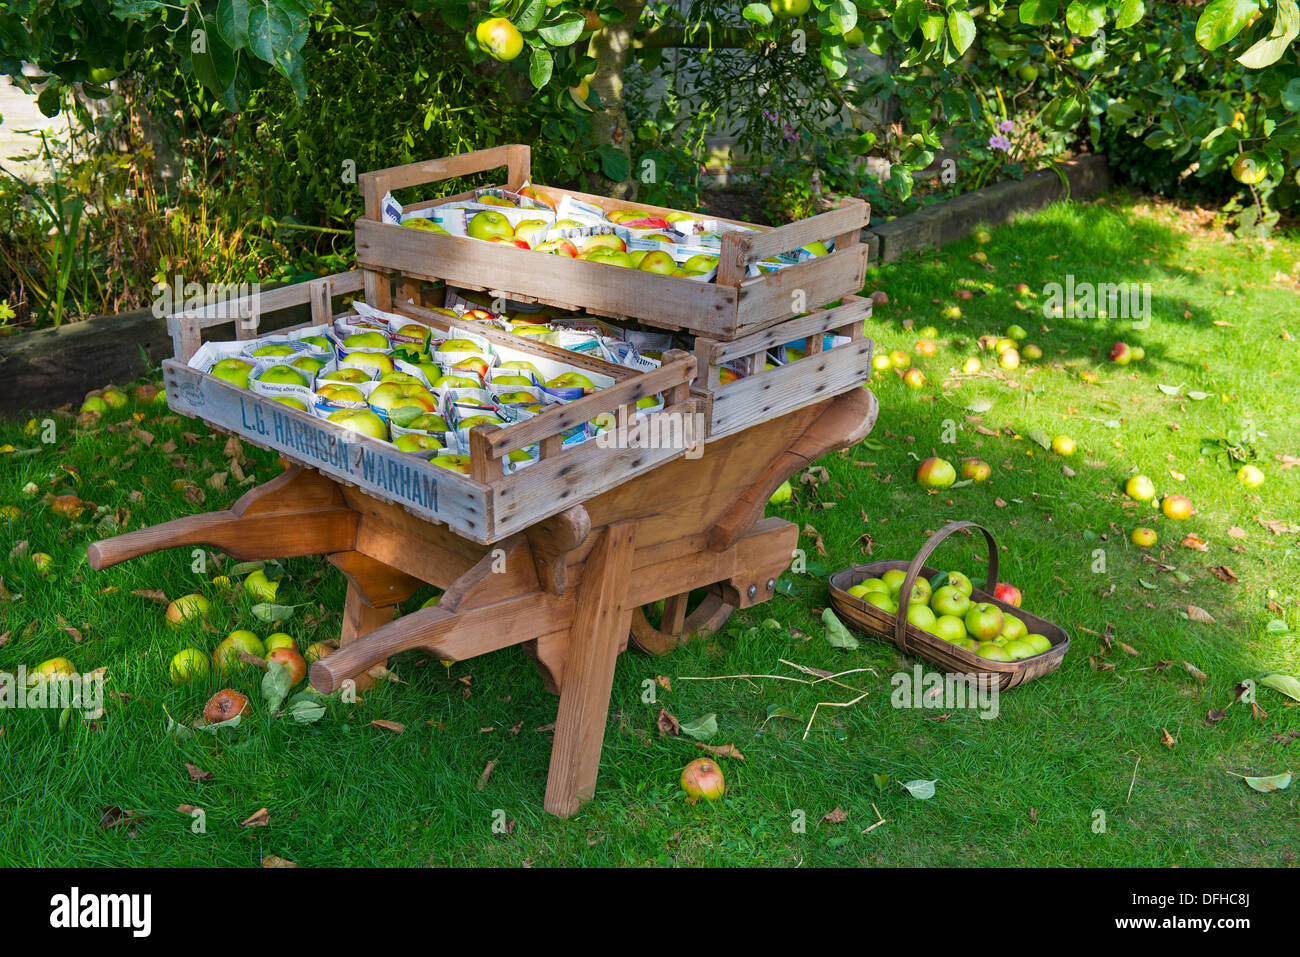 Bramley-Äpfel gepflückt, in Zeitungspapier eingewickelt und in Holztabletts gespeichert. Stockfoto